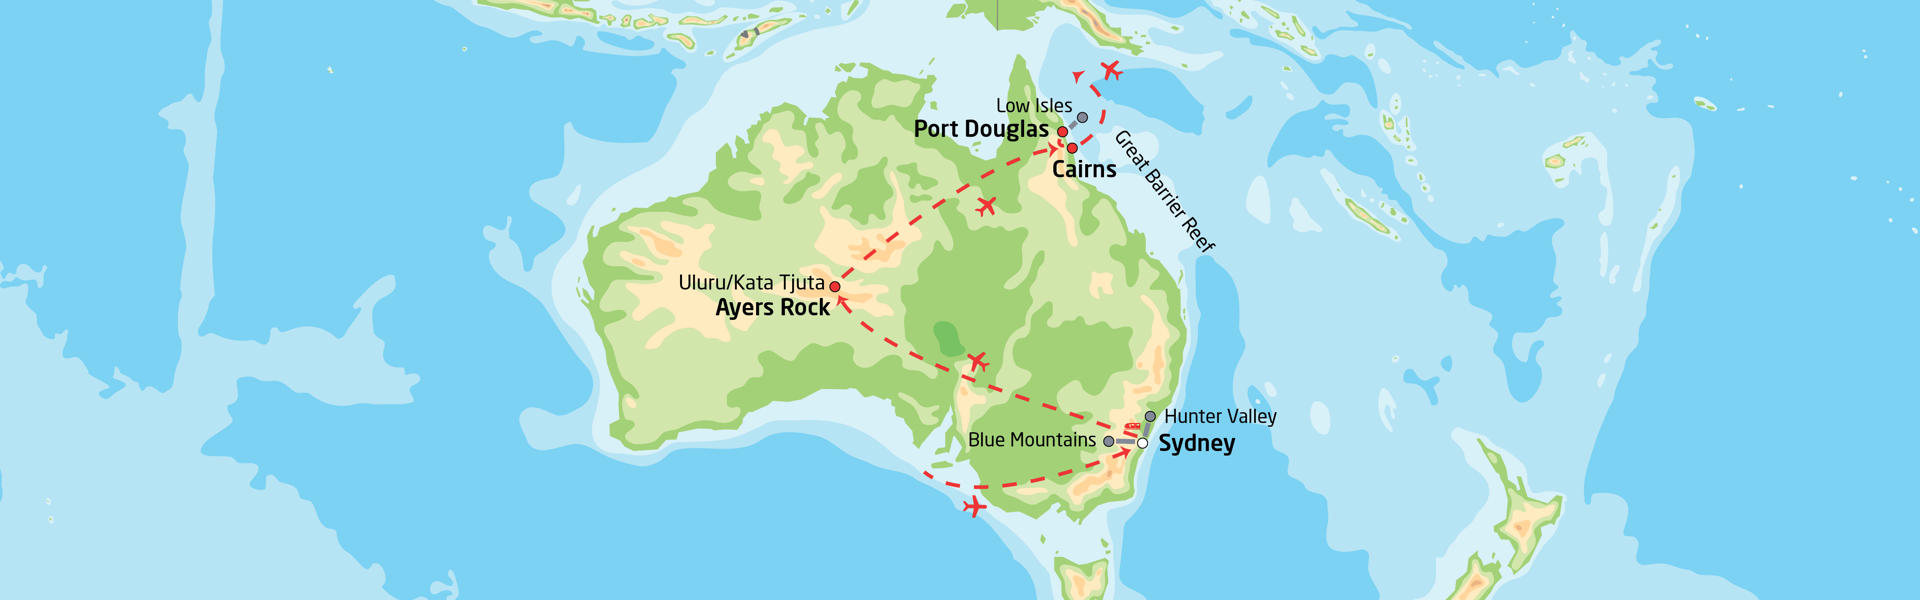 Storby, outback og korallrev i Australia | Reiserute